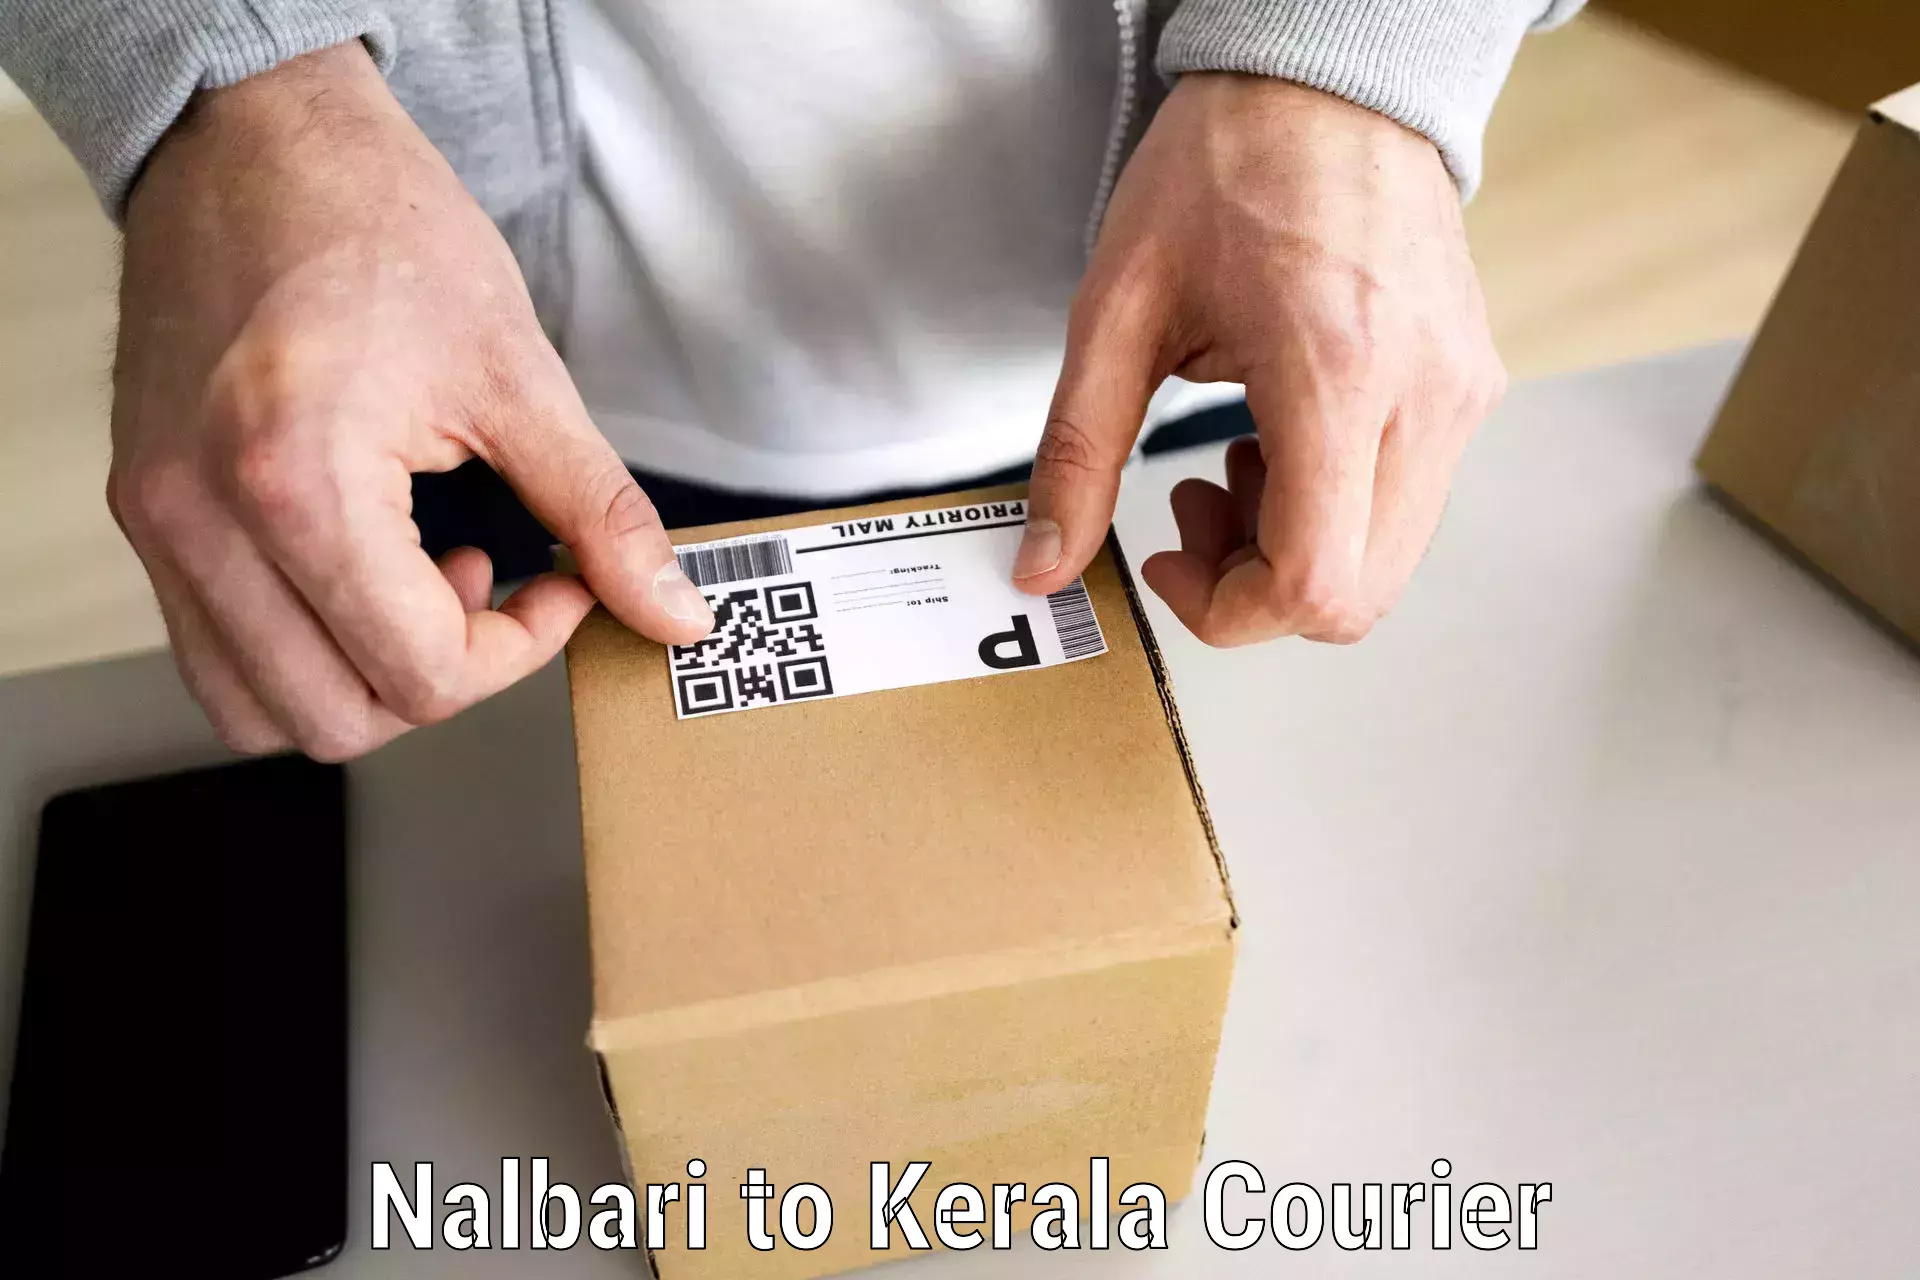 Efficient furniture movers Nalbari to Kattappana